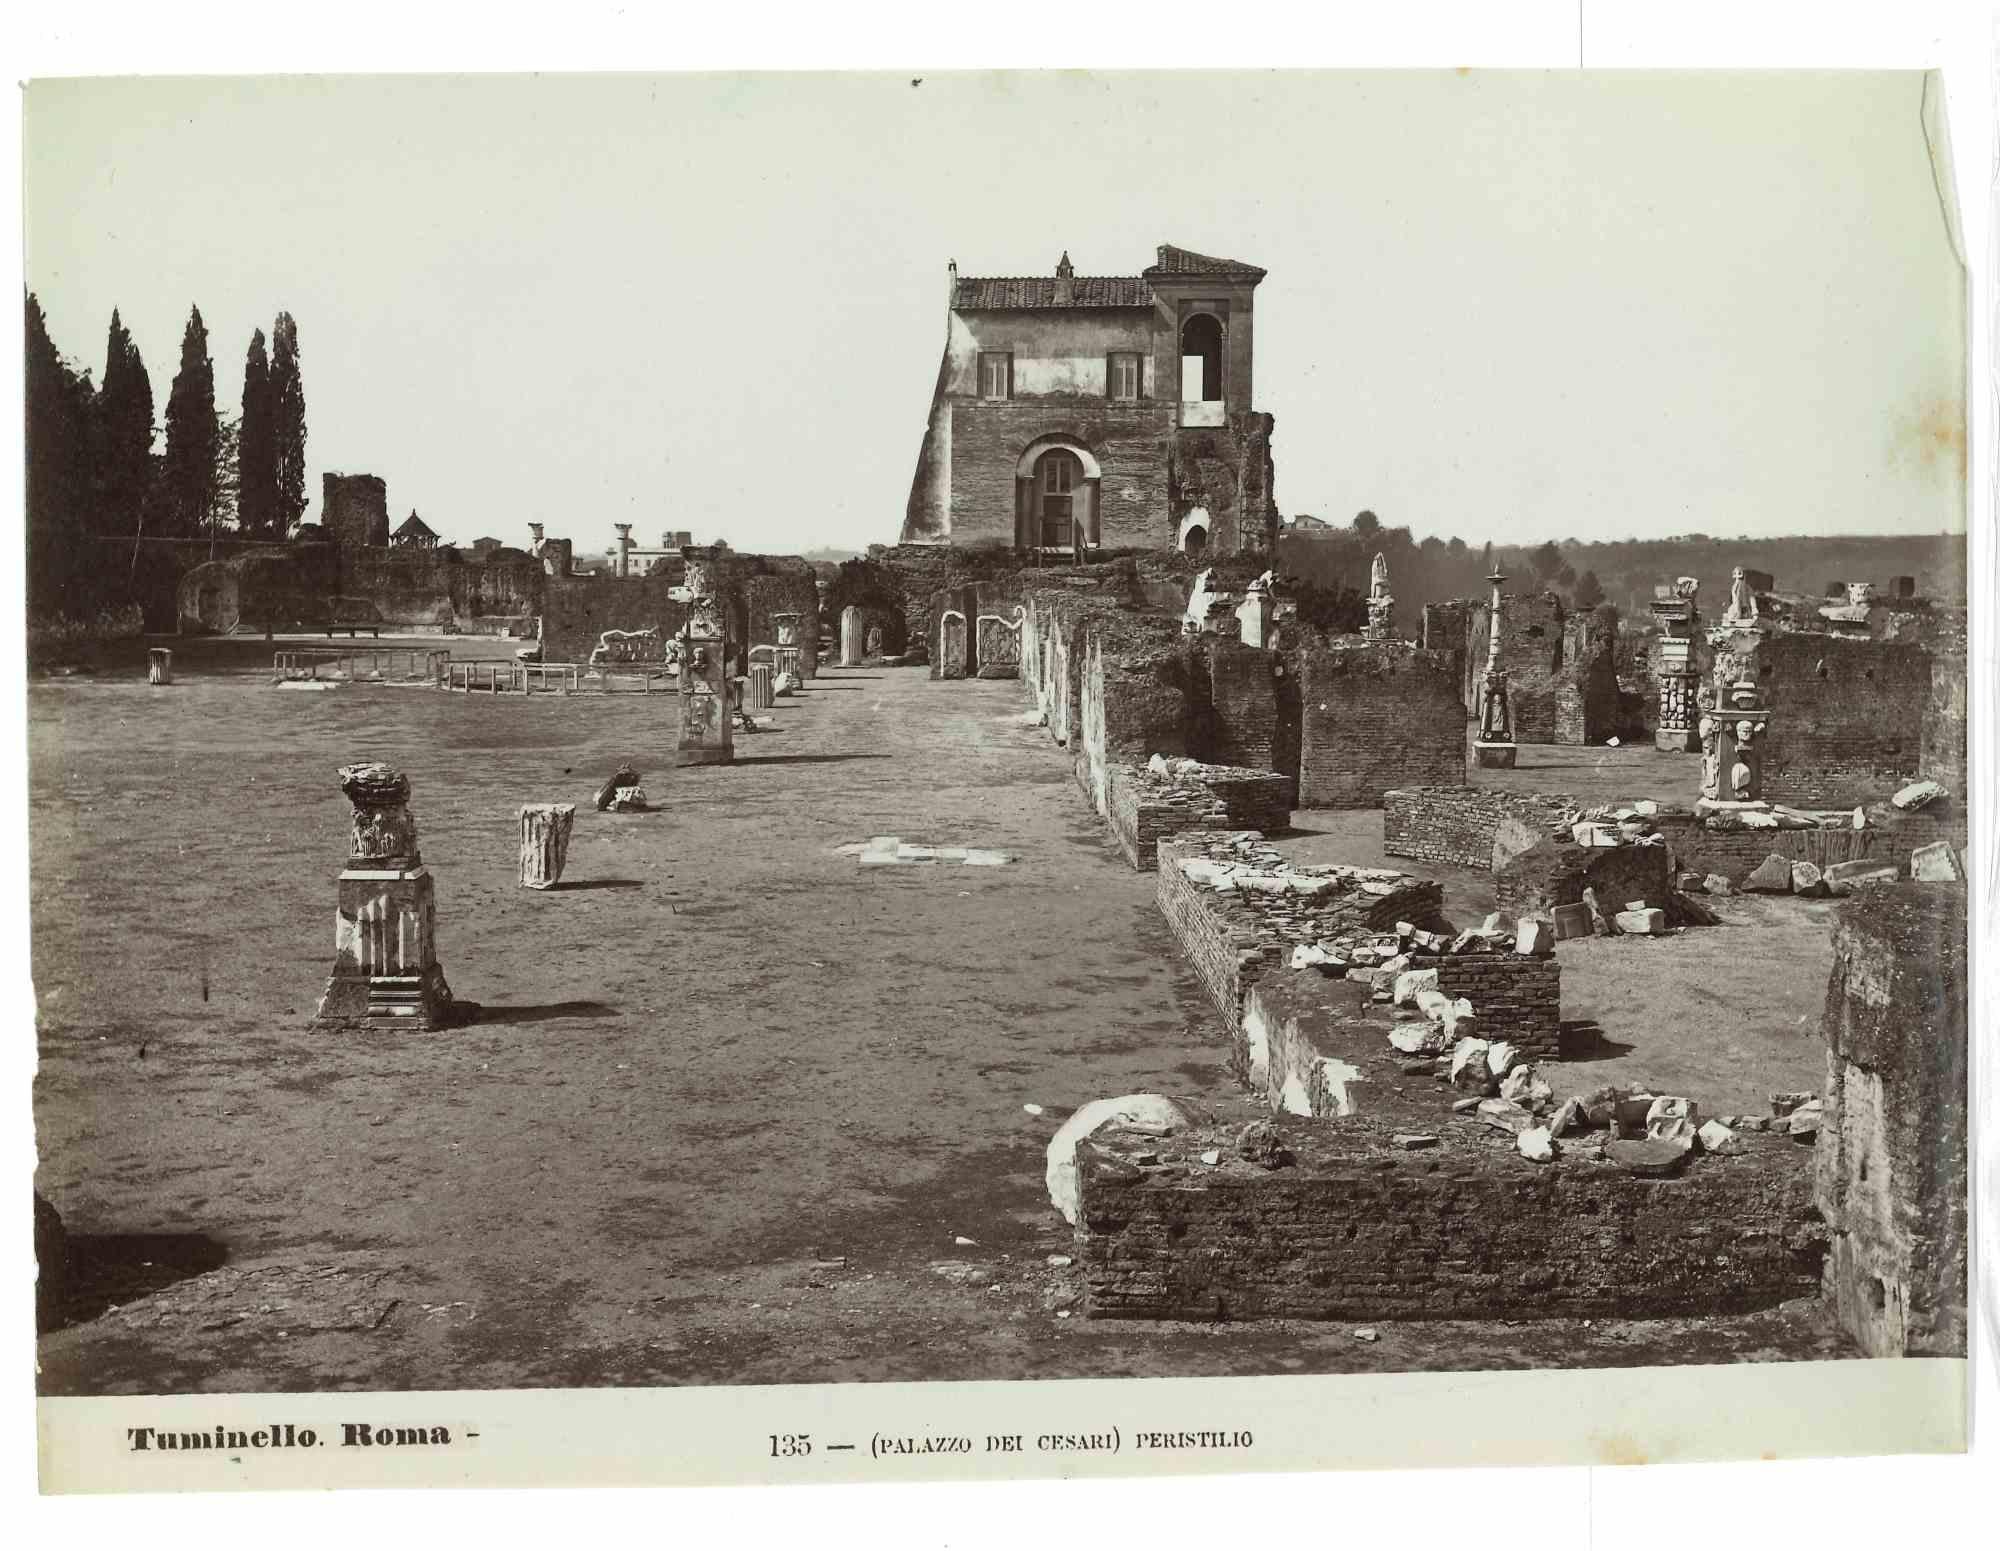 Les thermes de Caracalla est une photographie sépia vintage réalisée par Ludovico Tuminello au début du 20e siècle.

Titre sur la partie inférieure.

Bon état, sauf quelques rousseurs.